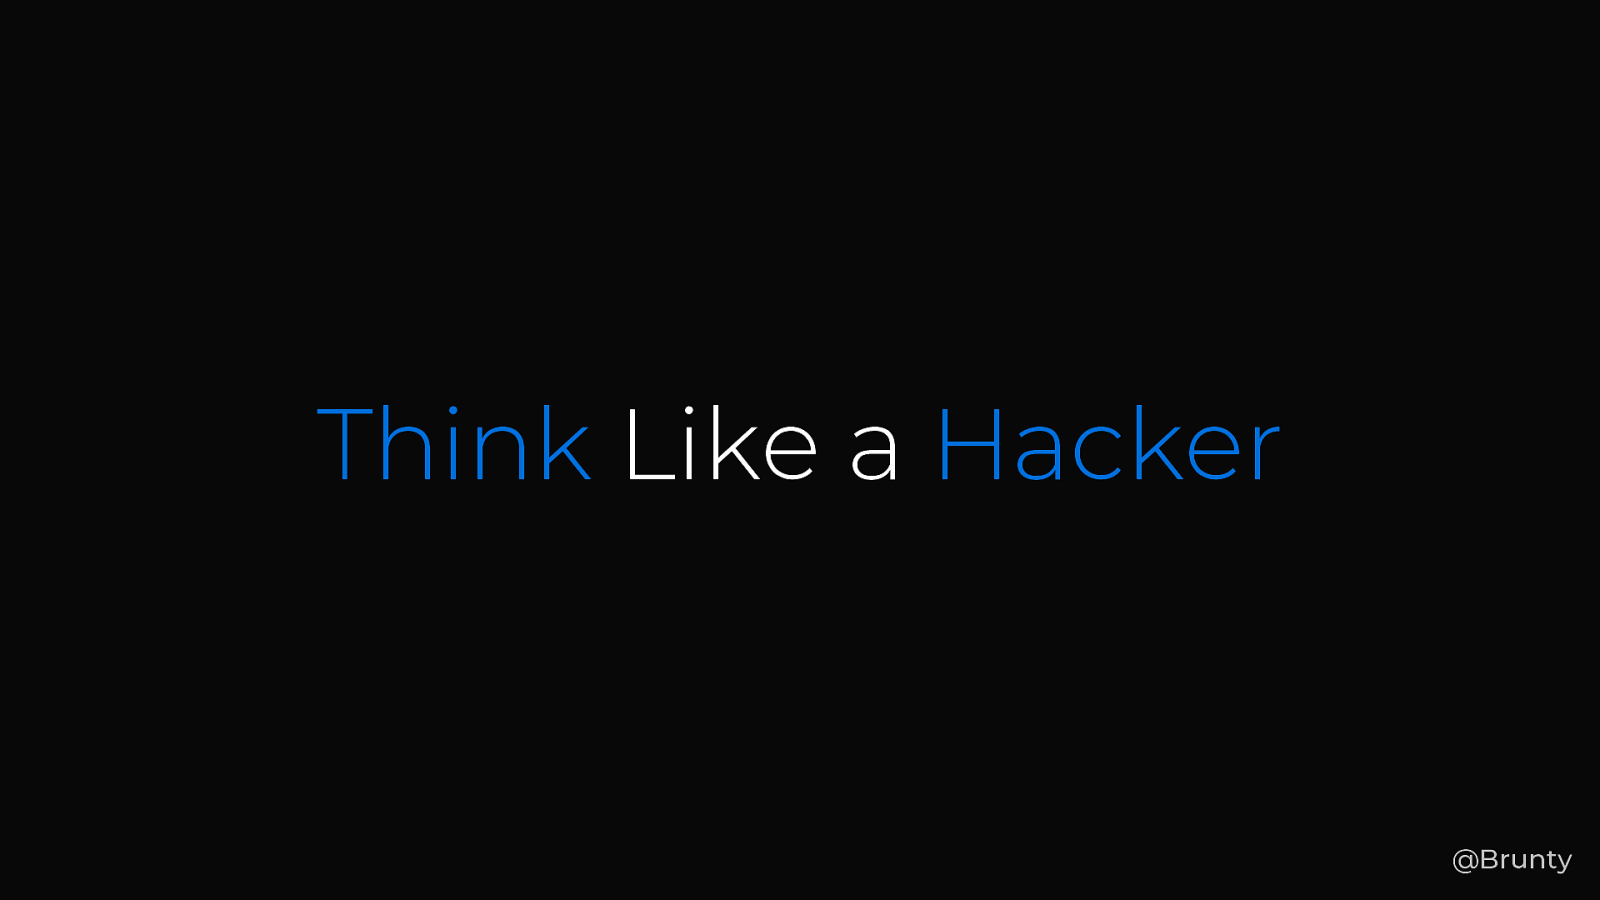 Think Like a Hacker